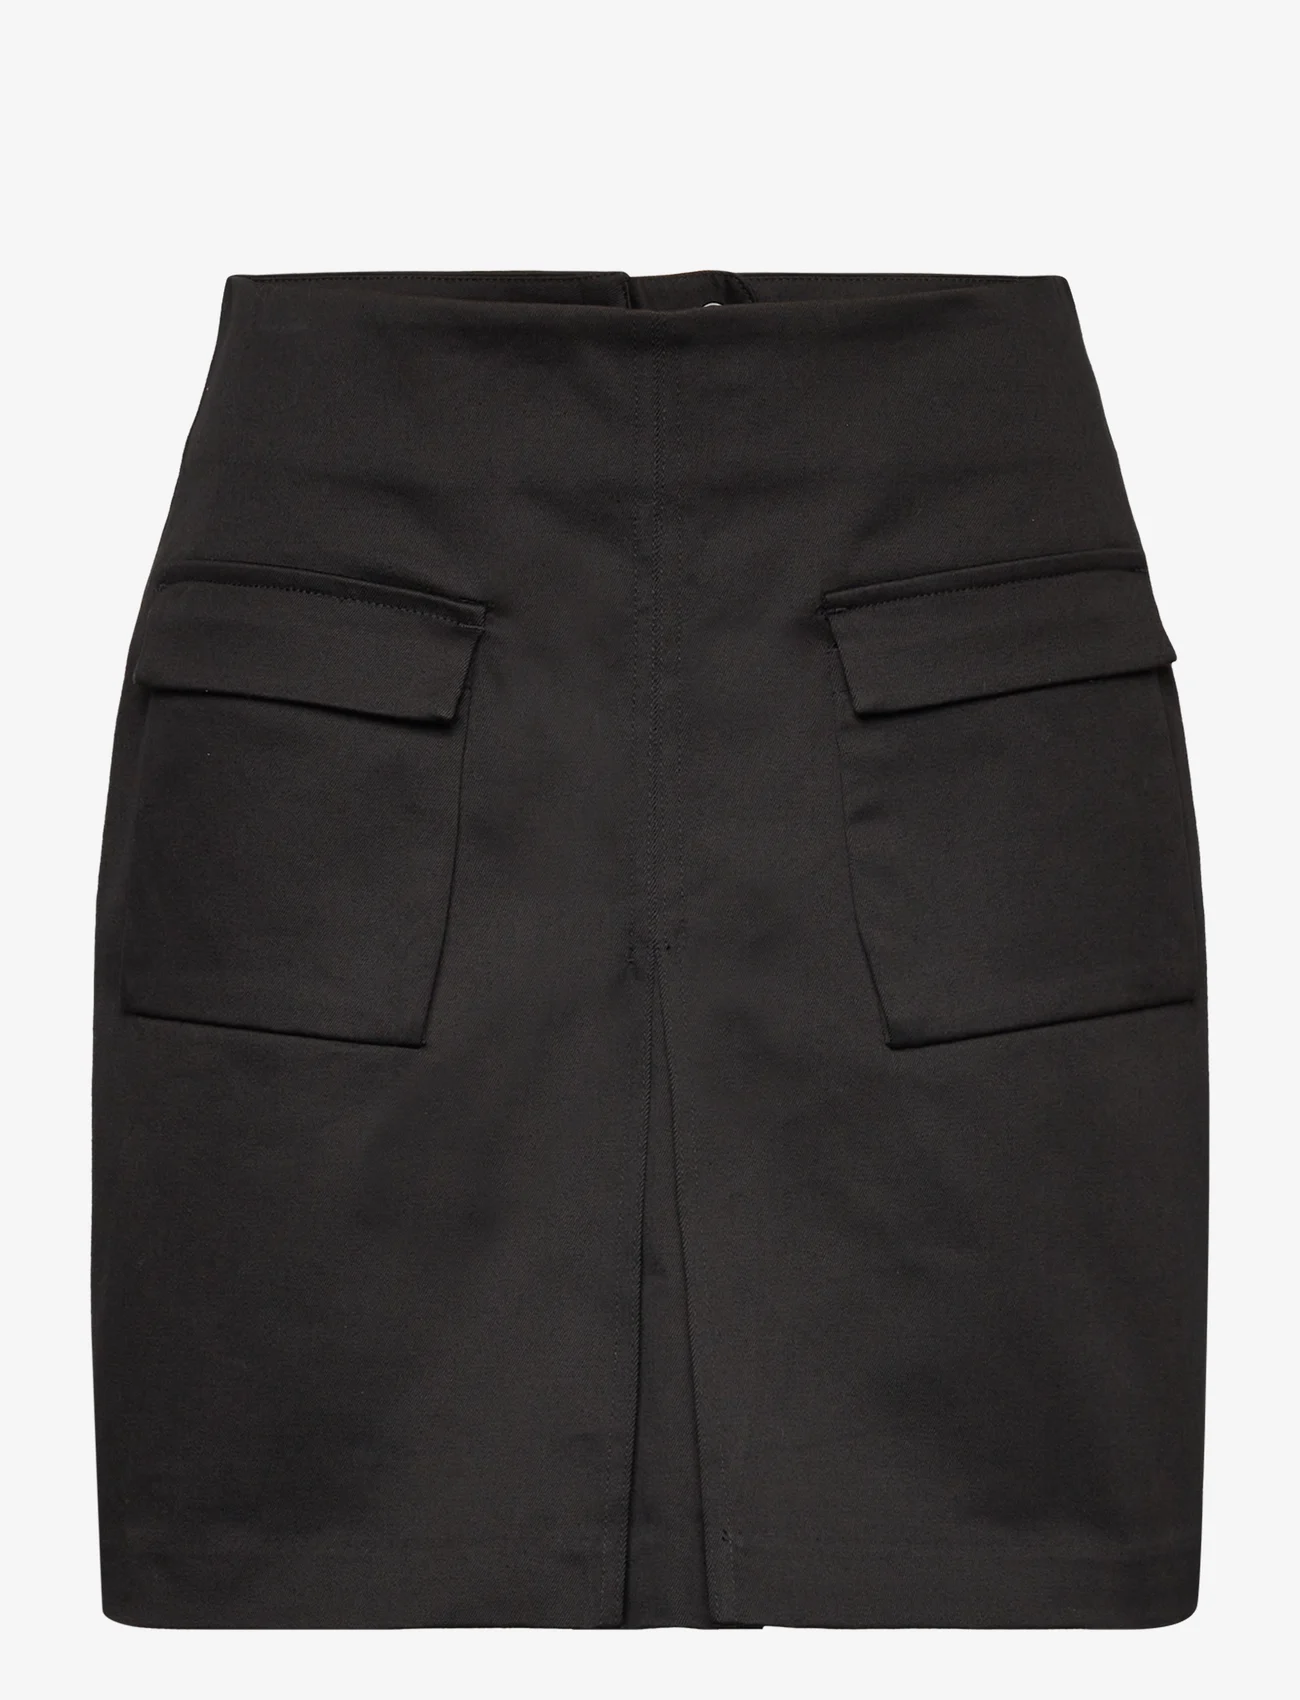 HOLZWEILER - Caro Cargo Skirt - short skirts - black - 0